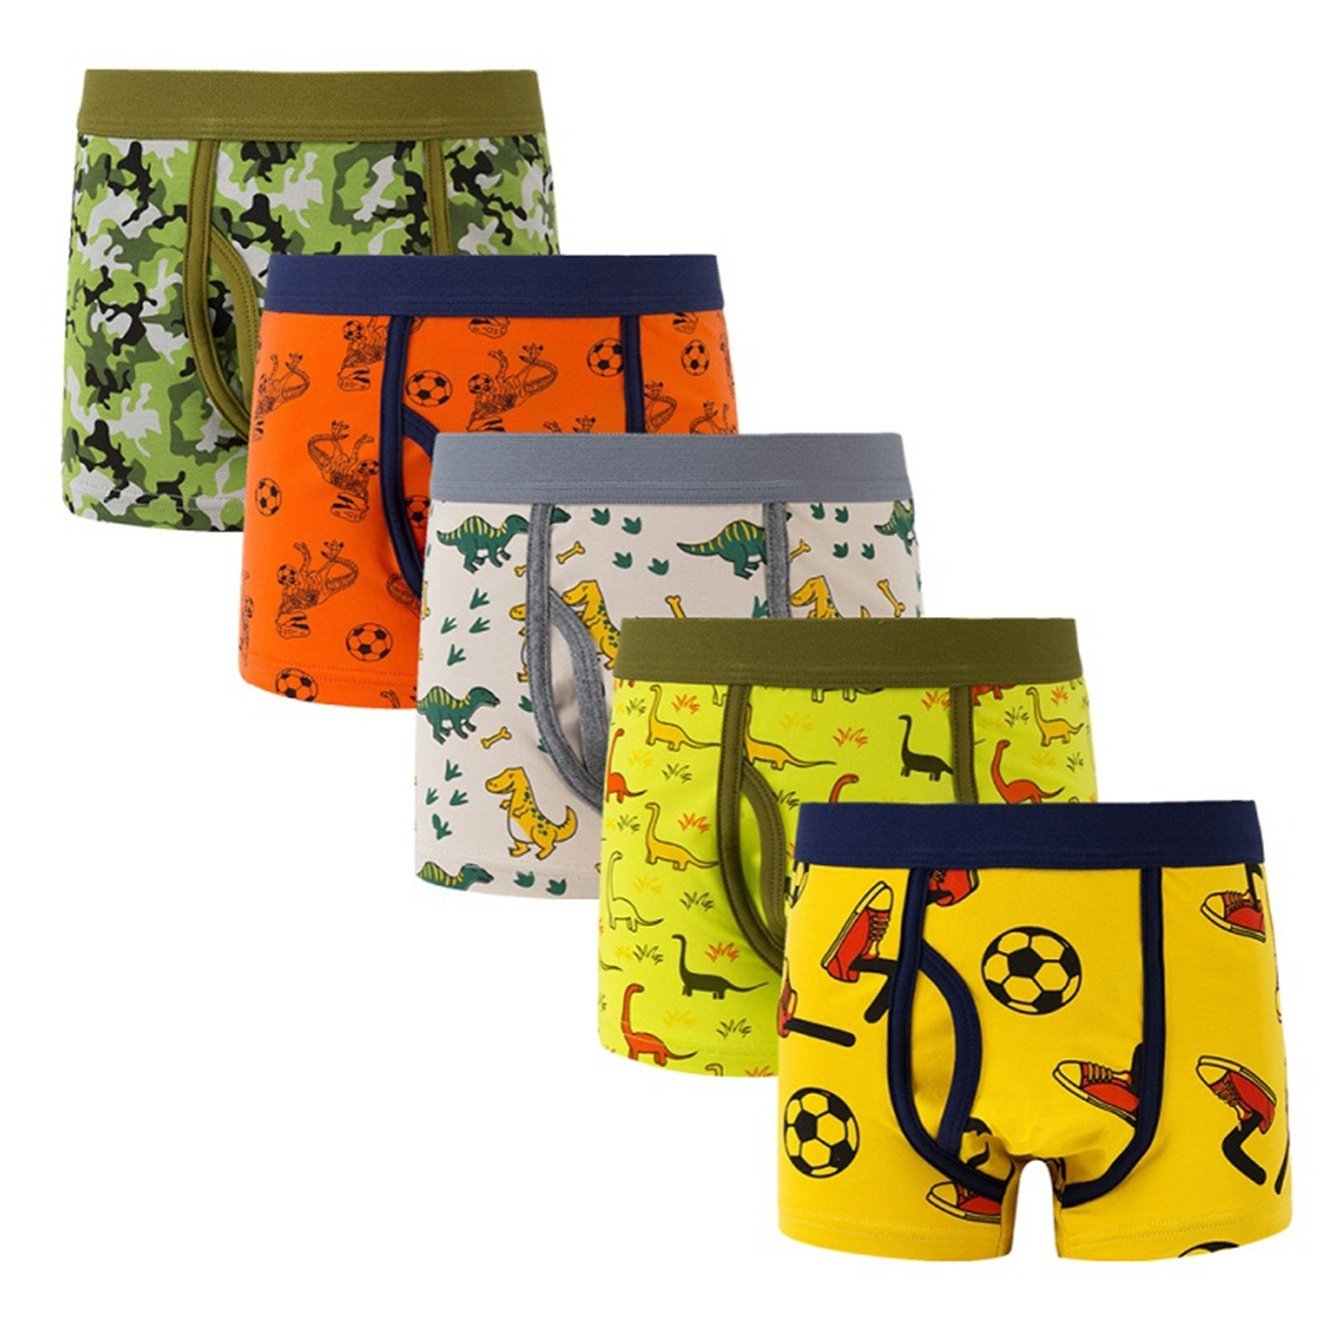 CM-Kid Toddler Boys Dinosaur Boxer Briefs 6-Pack Underwear 4T Cotton  Cartoon Soft Comfort Waist